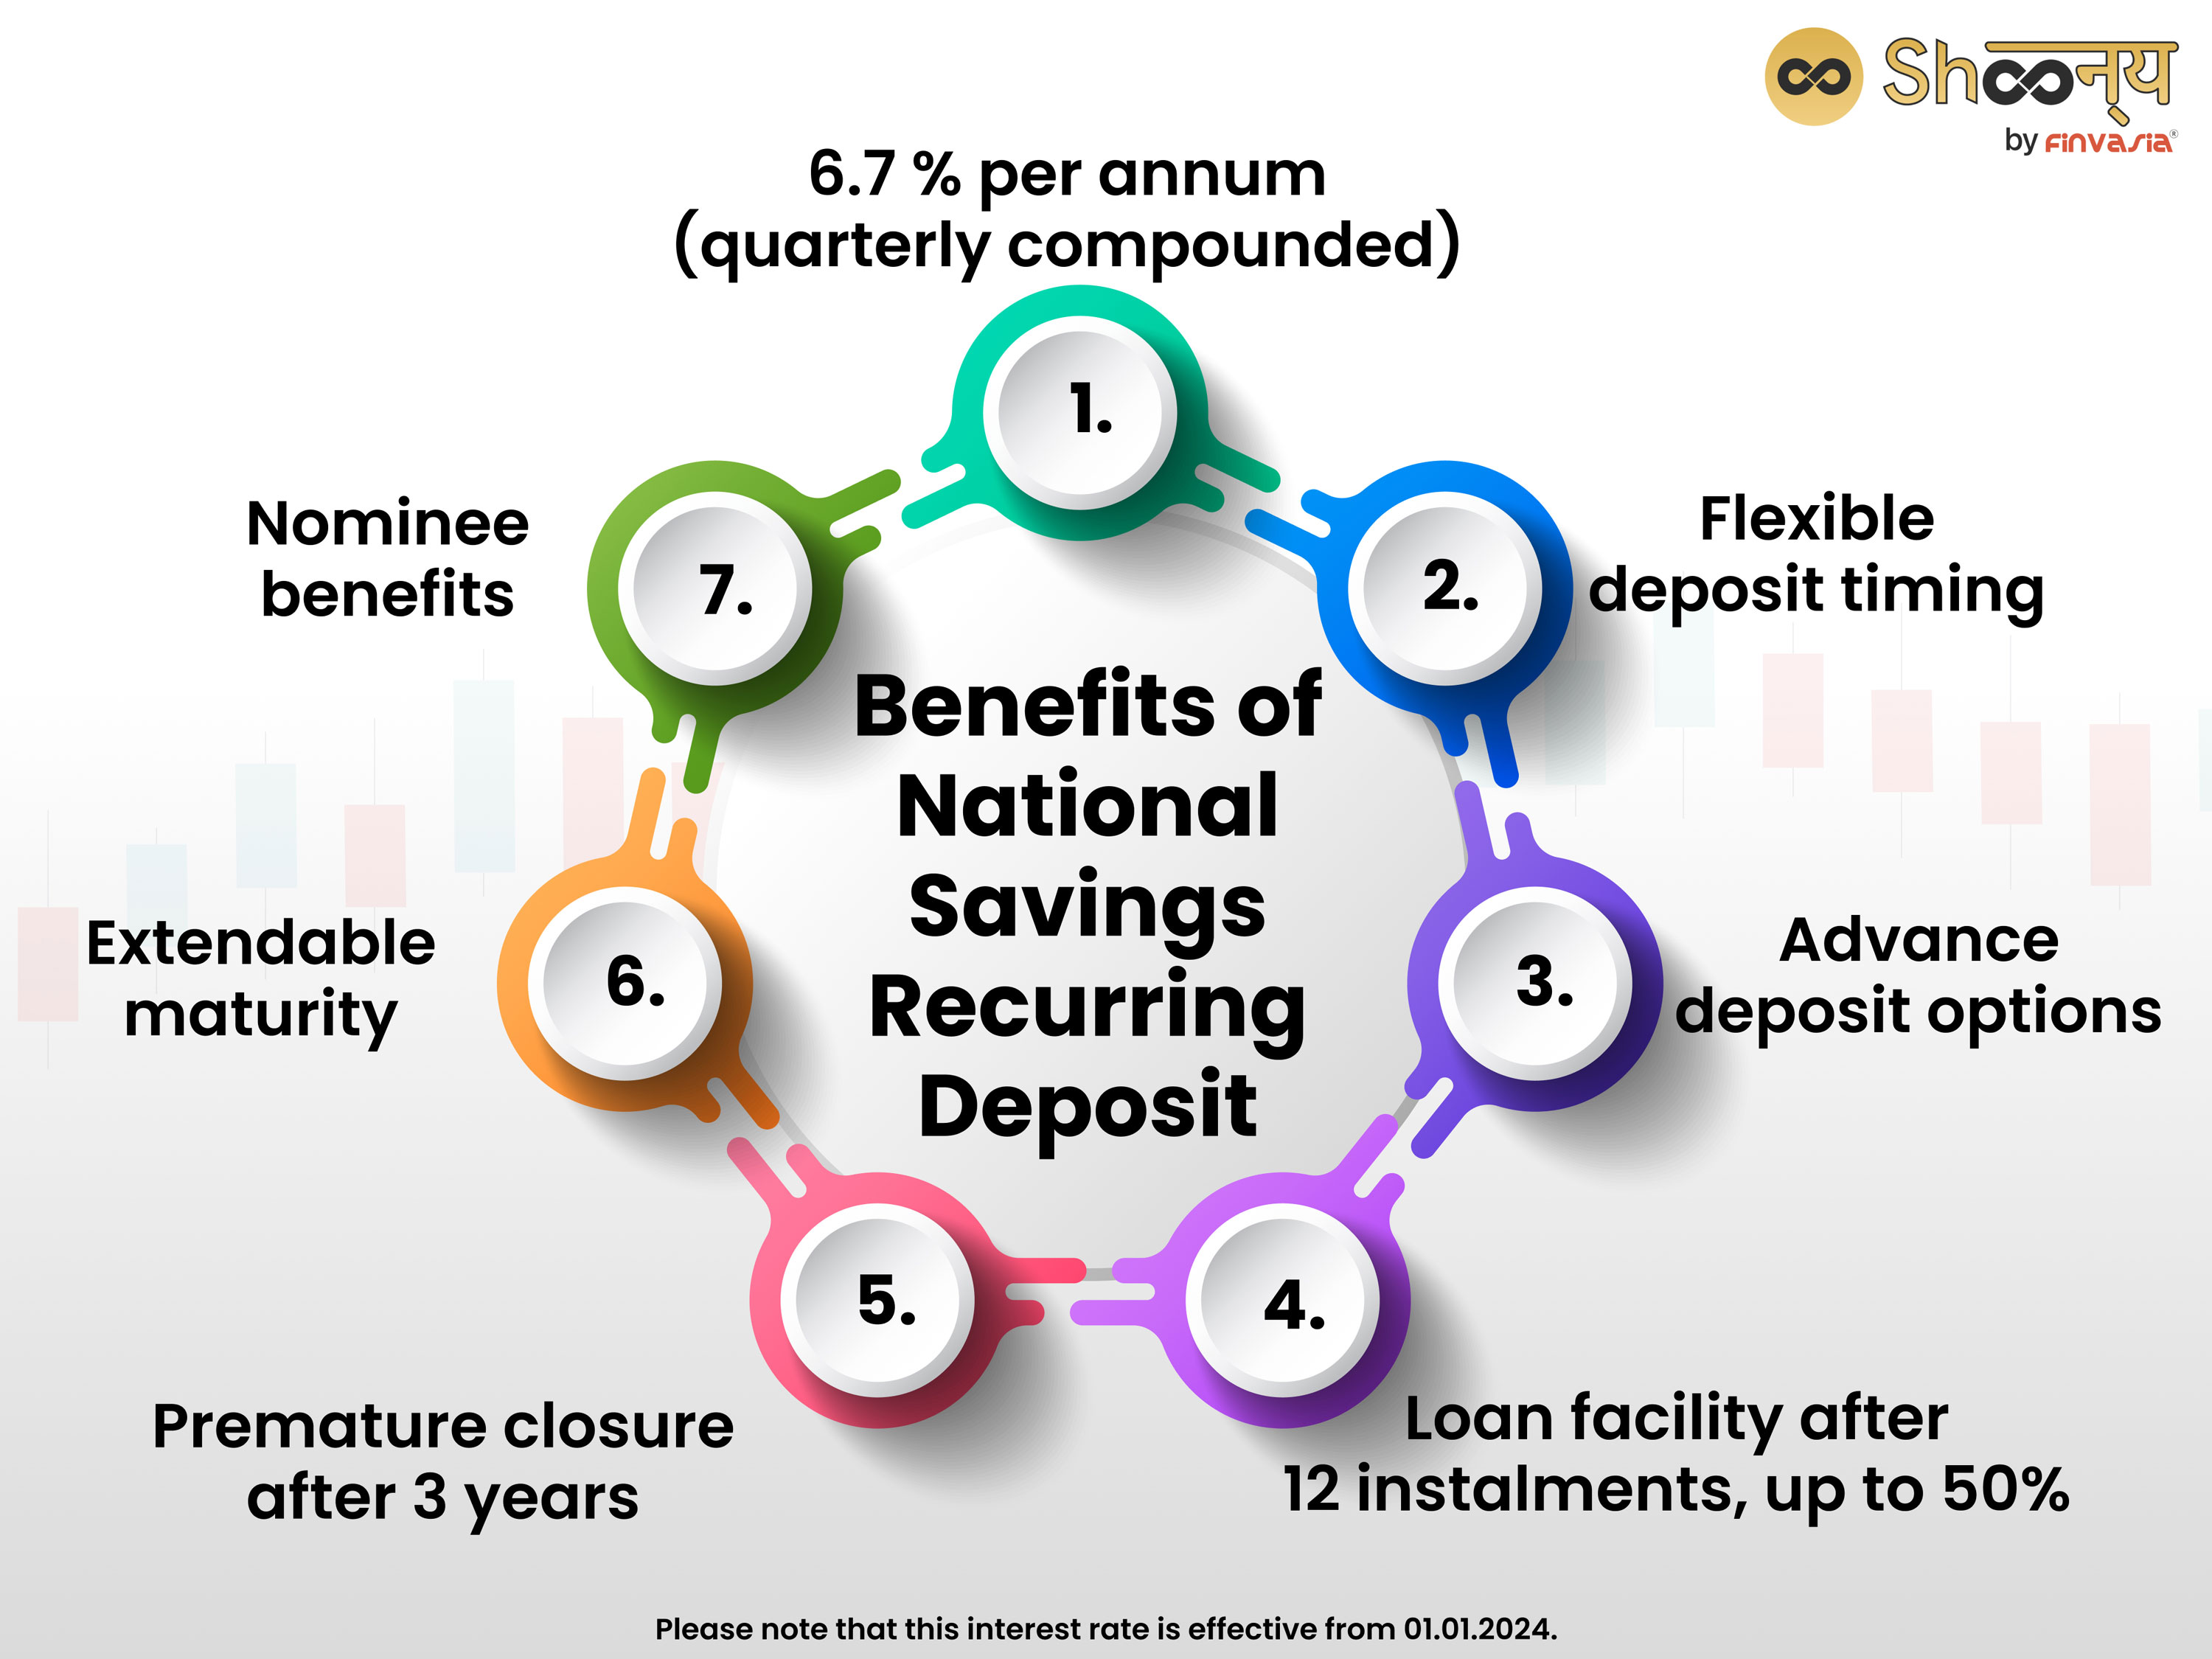 Benefits of National Savings Recurring Deposit
